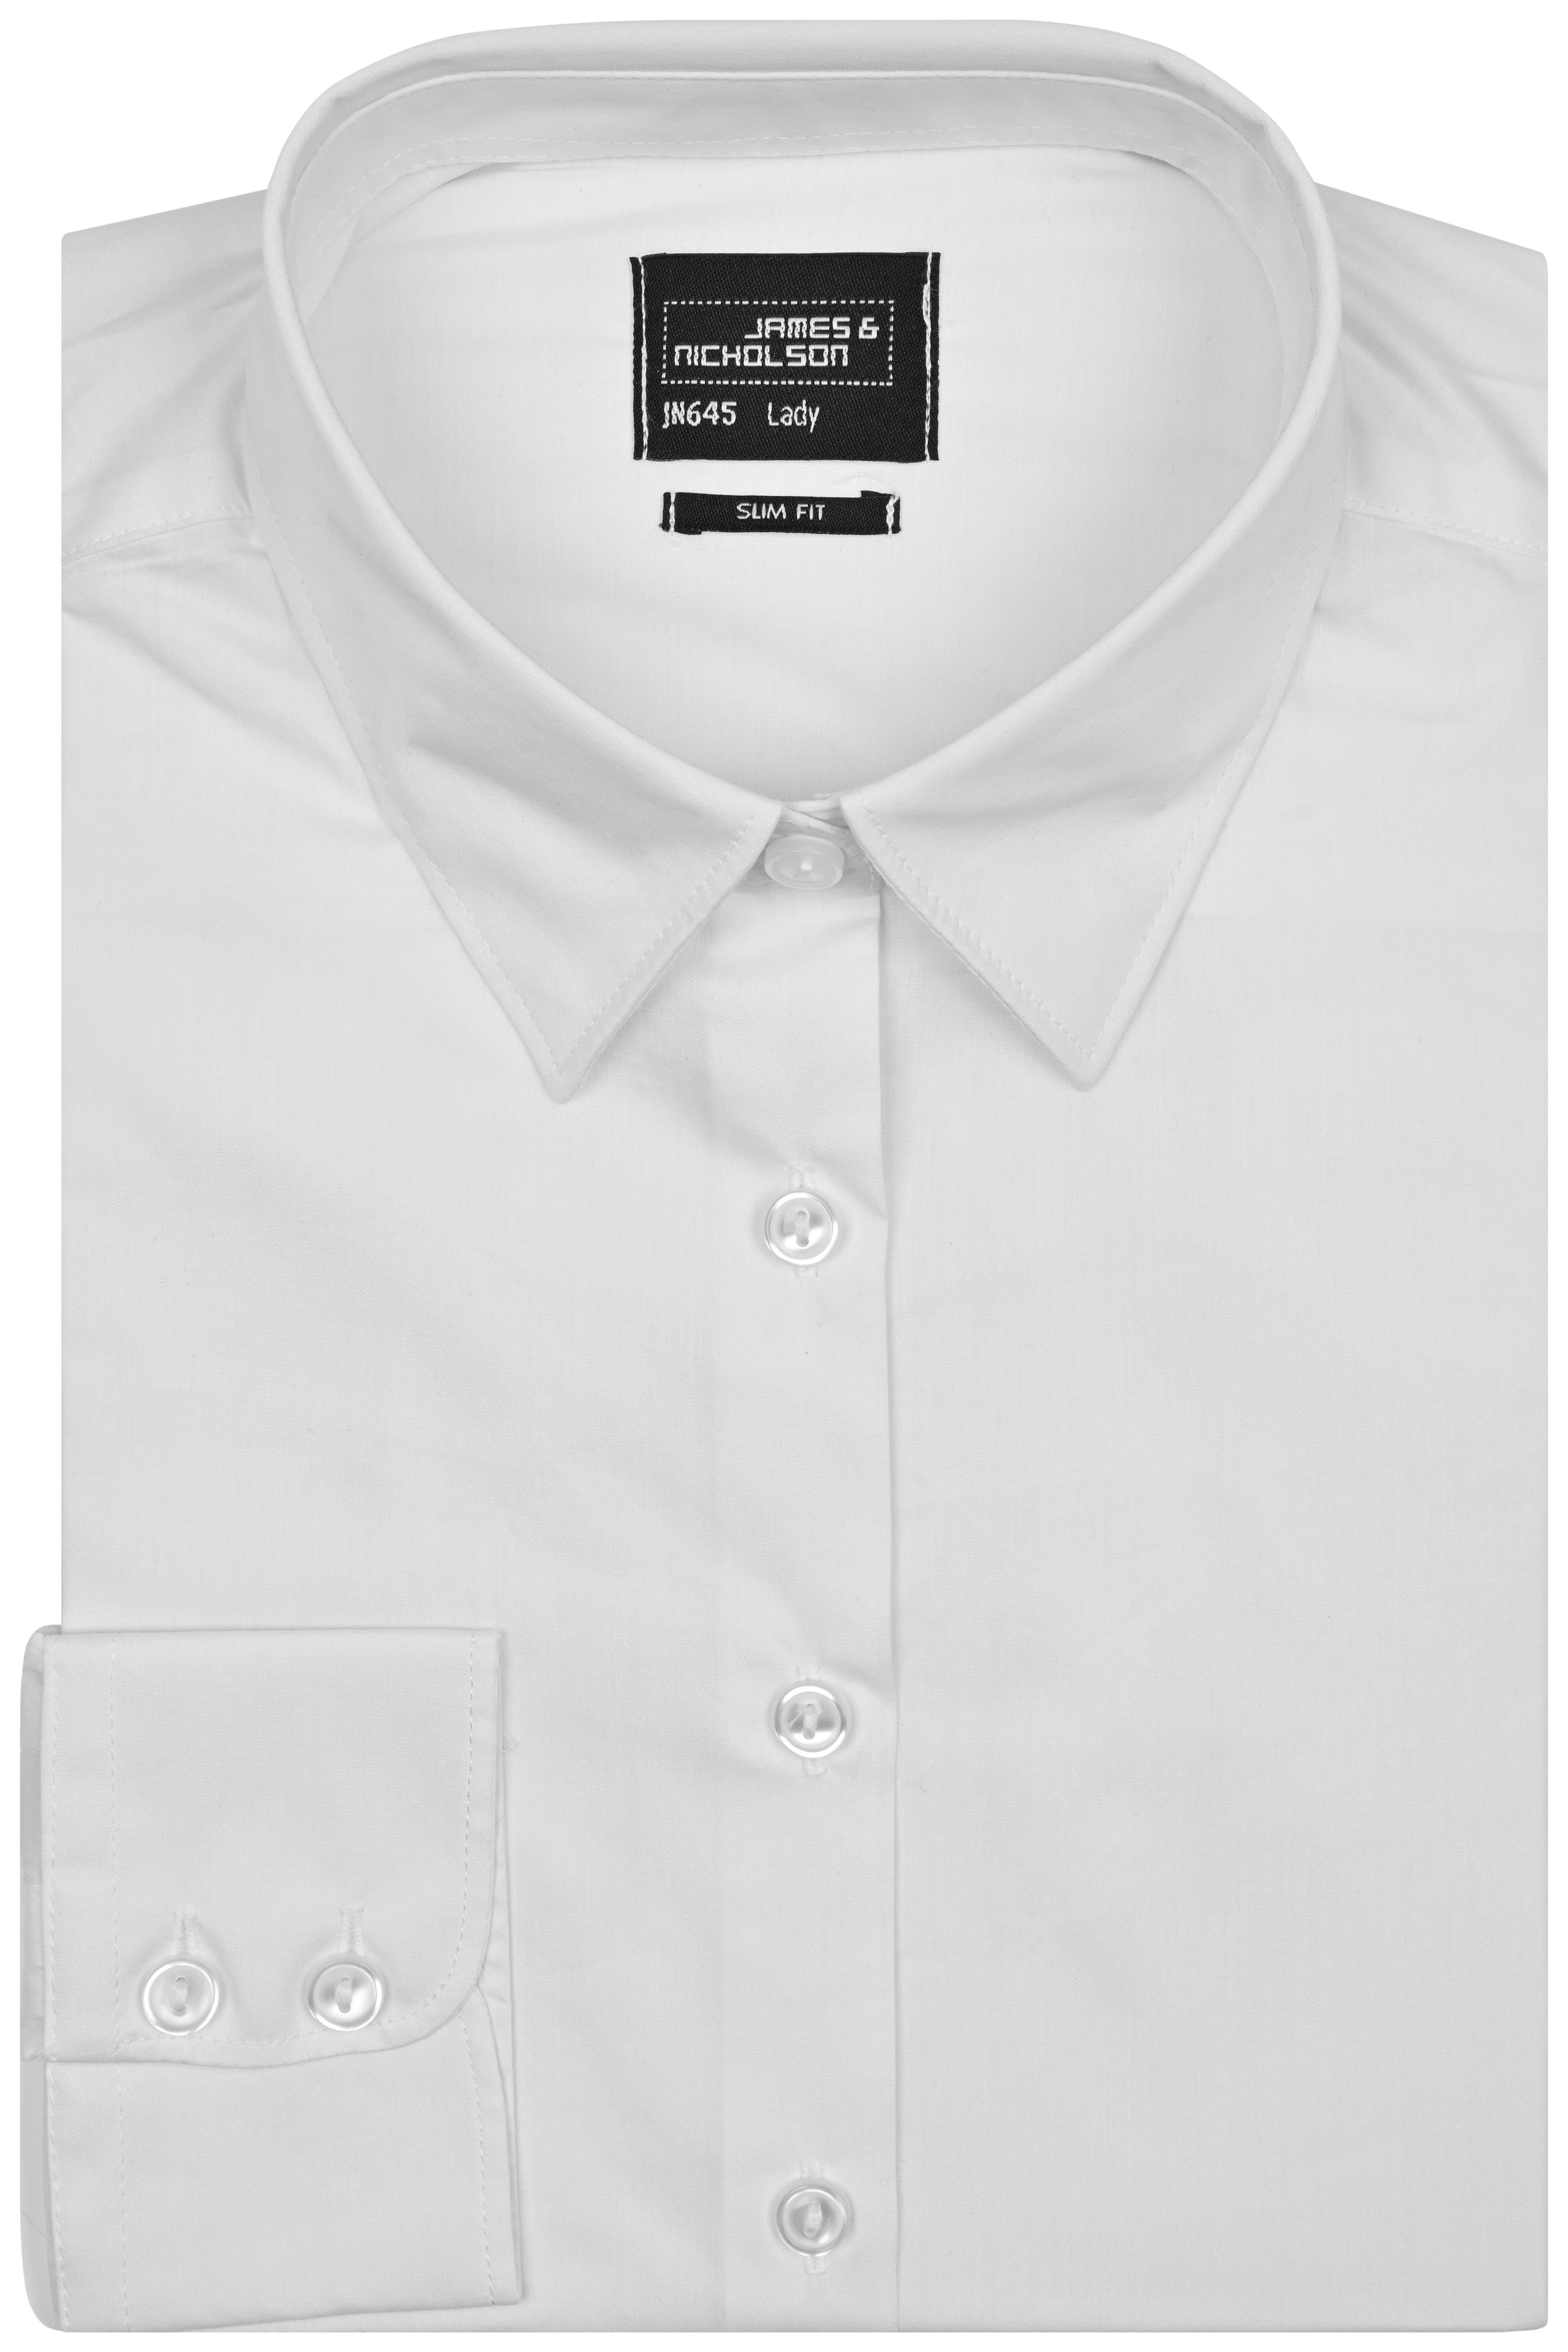 Ladies Ladies' Shirt Slim Fit White-Promotextilien.de